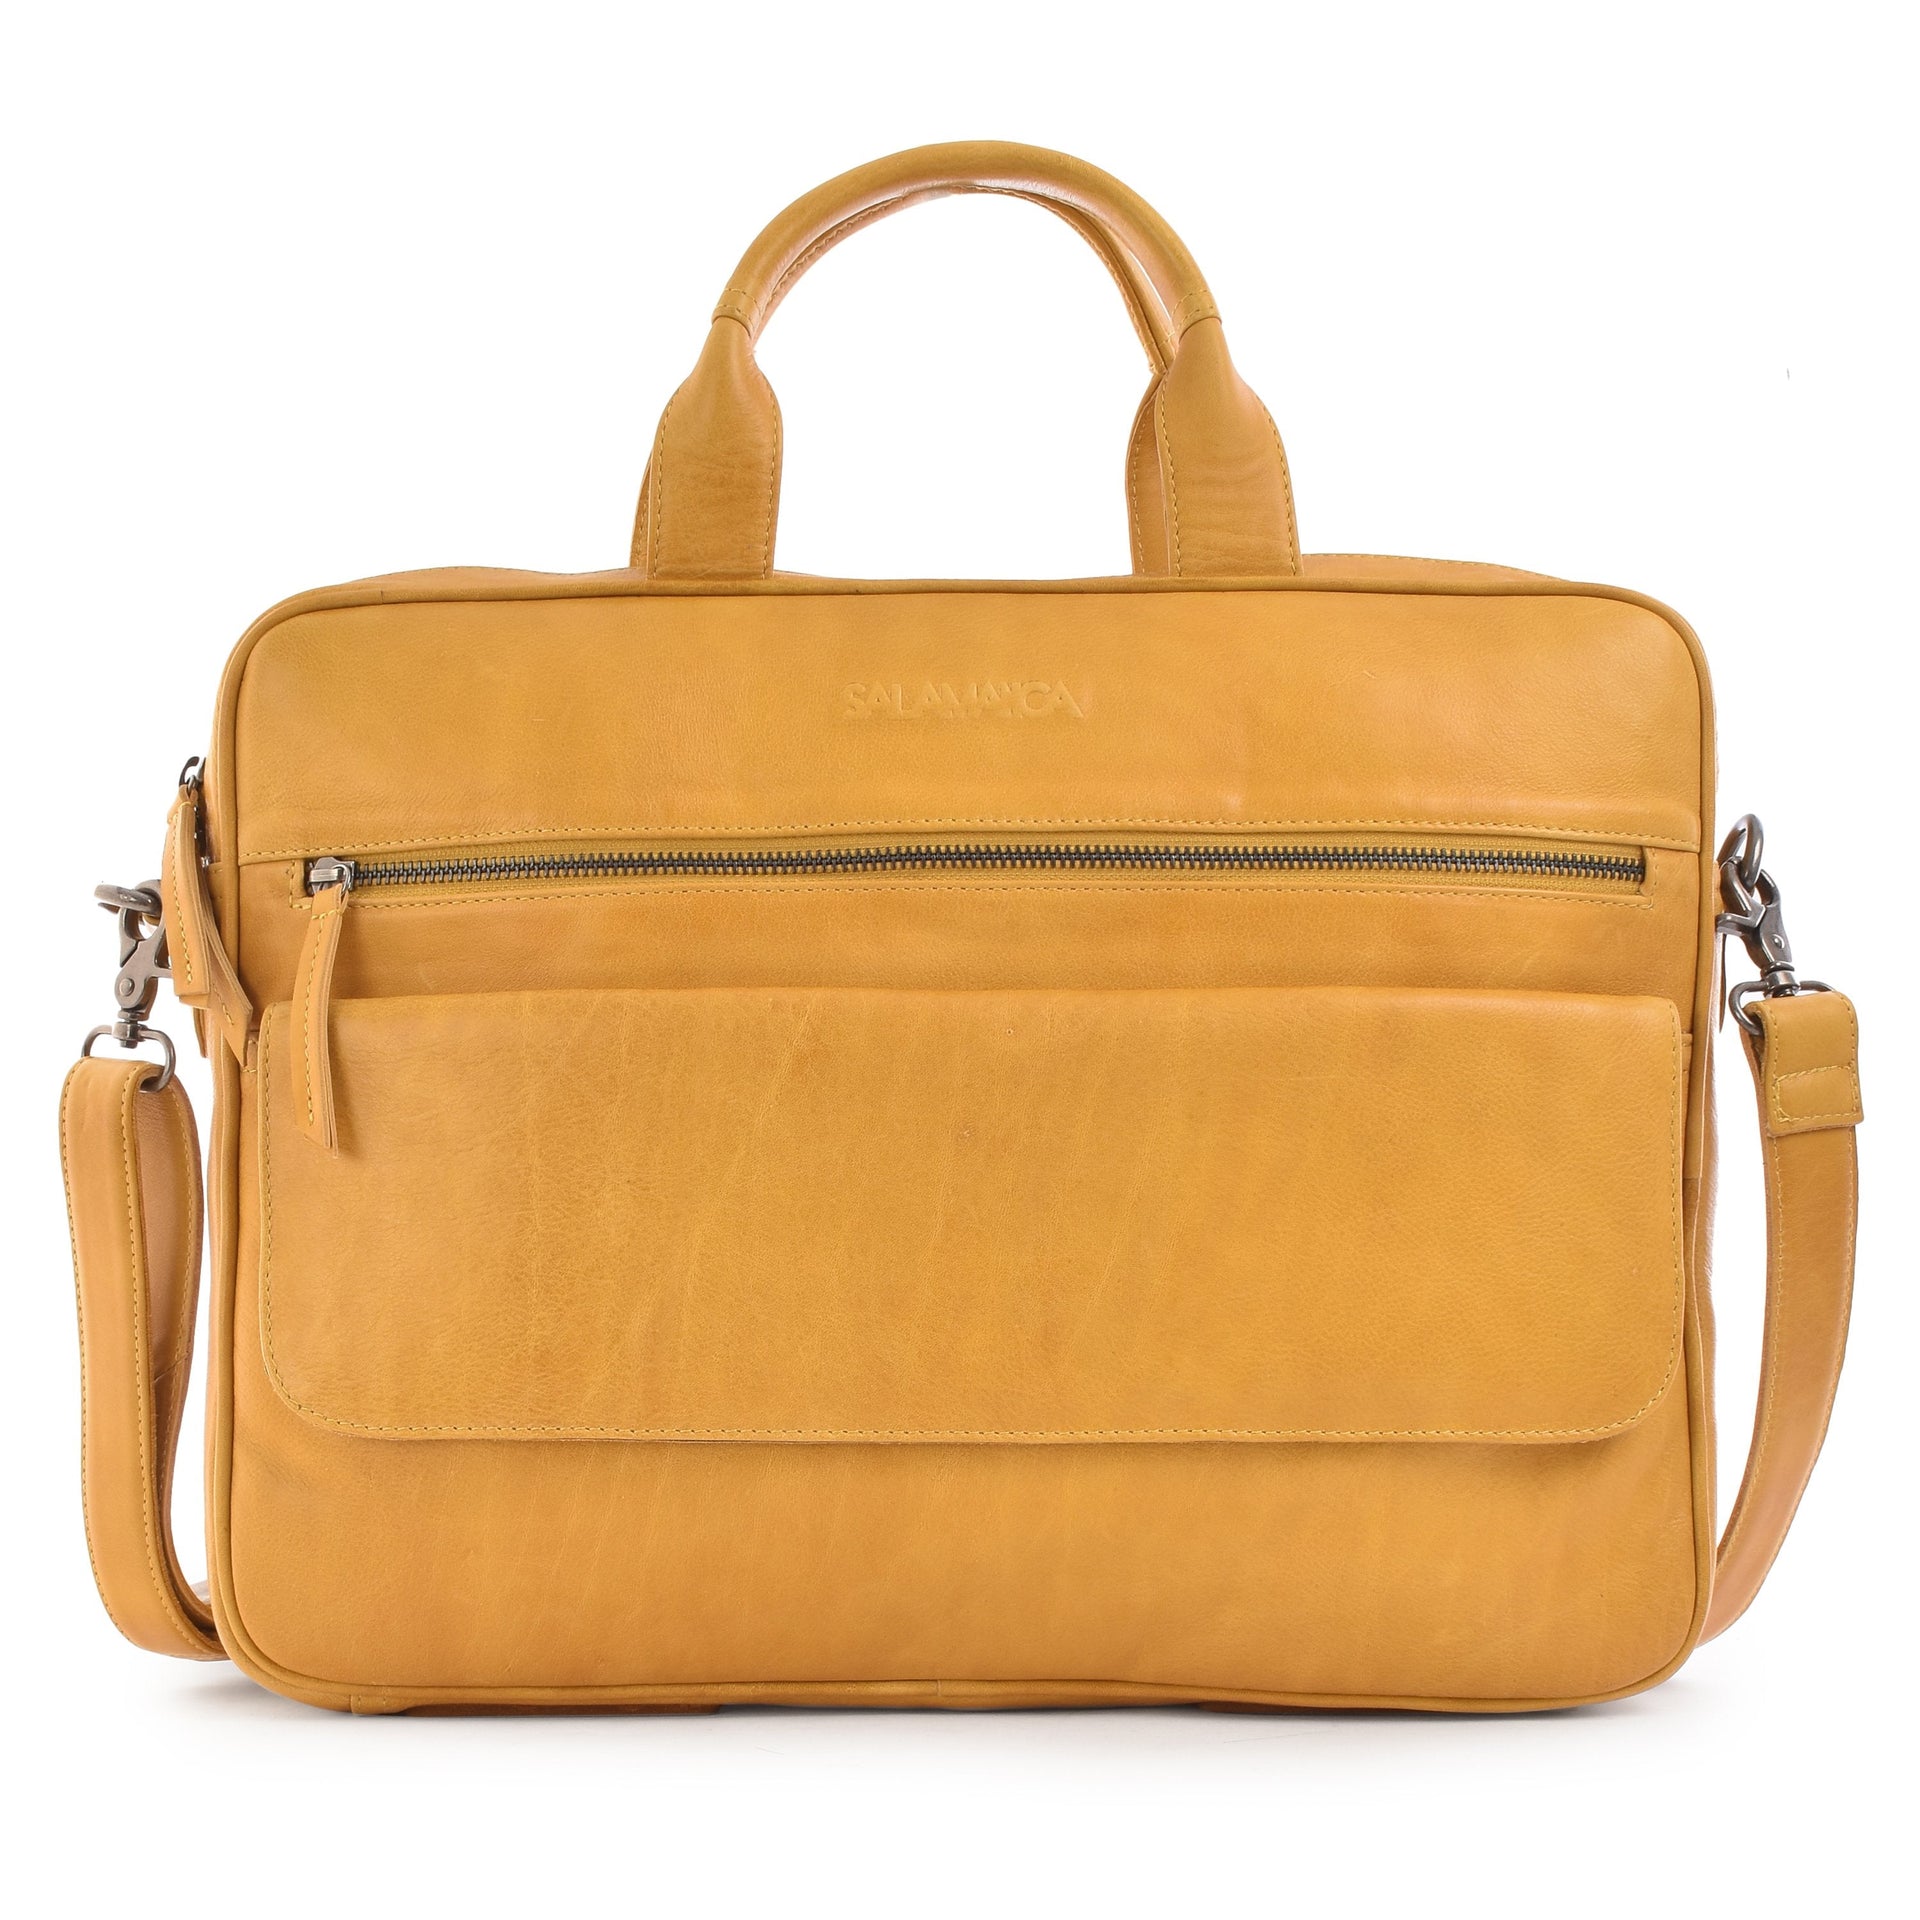 StrapIt Business Bag - Dark Mustard - Laptop Bags